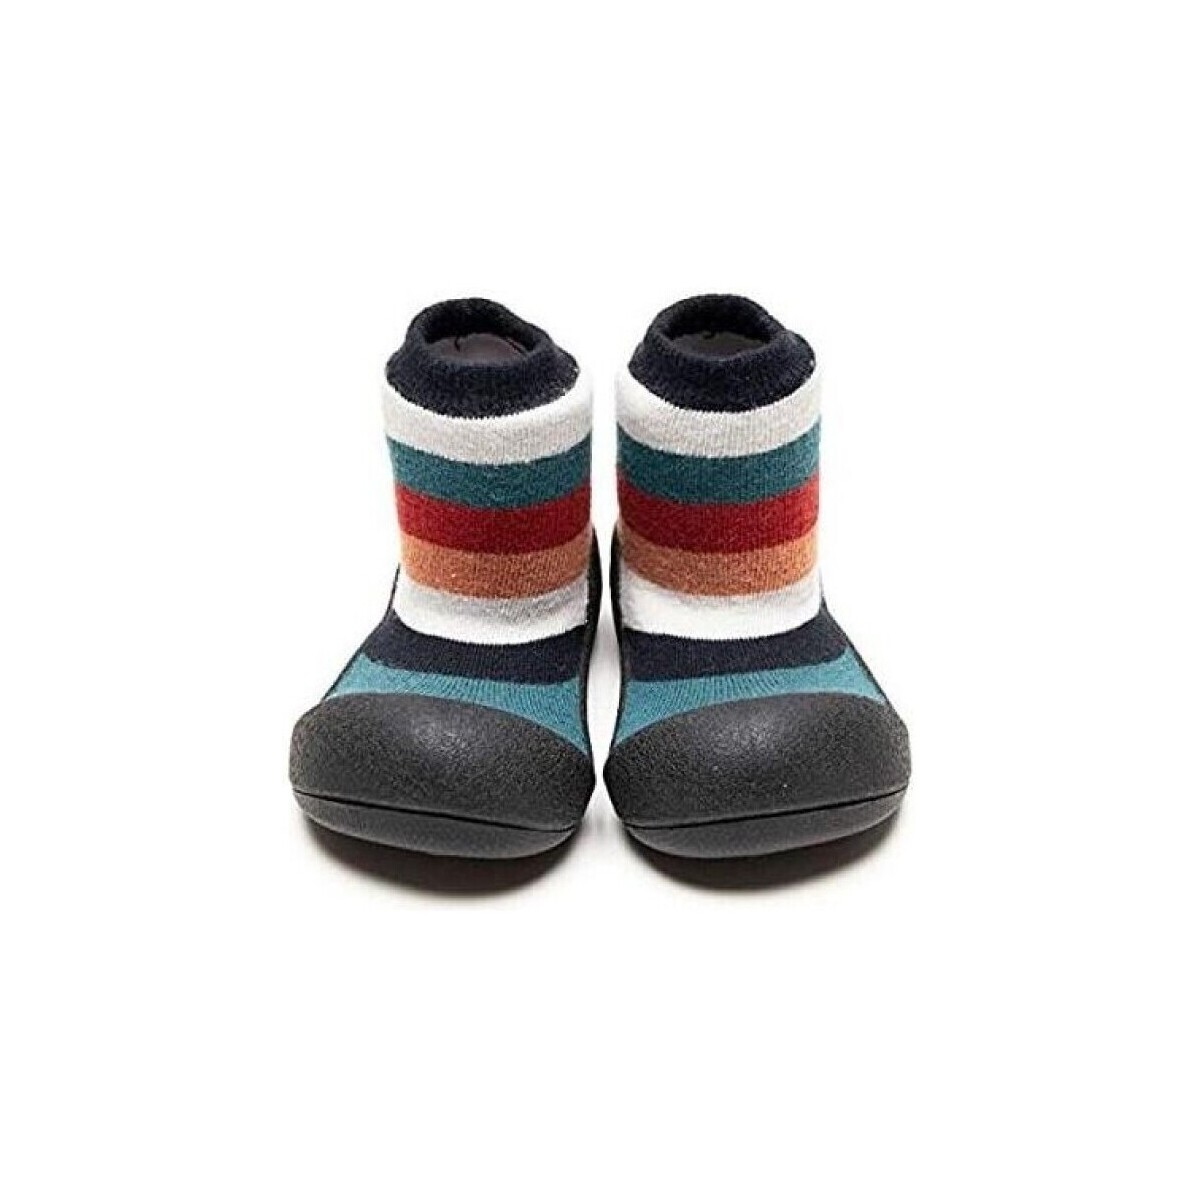 Sapatos Criança Pantufas bebé Attipas New Rainbow - Black Multicolor